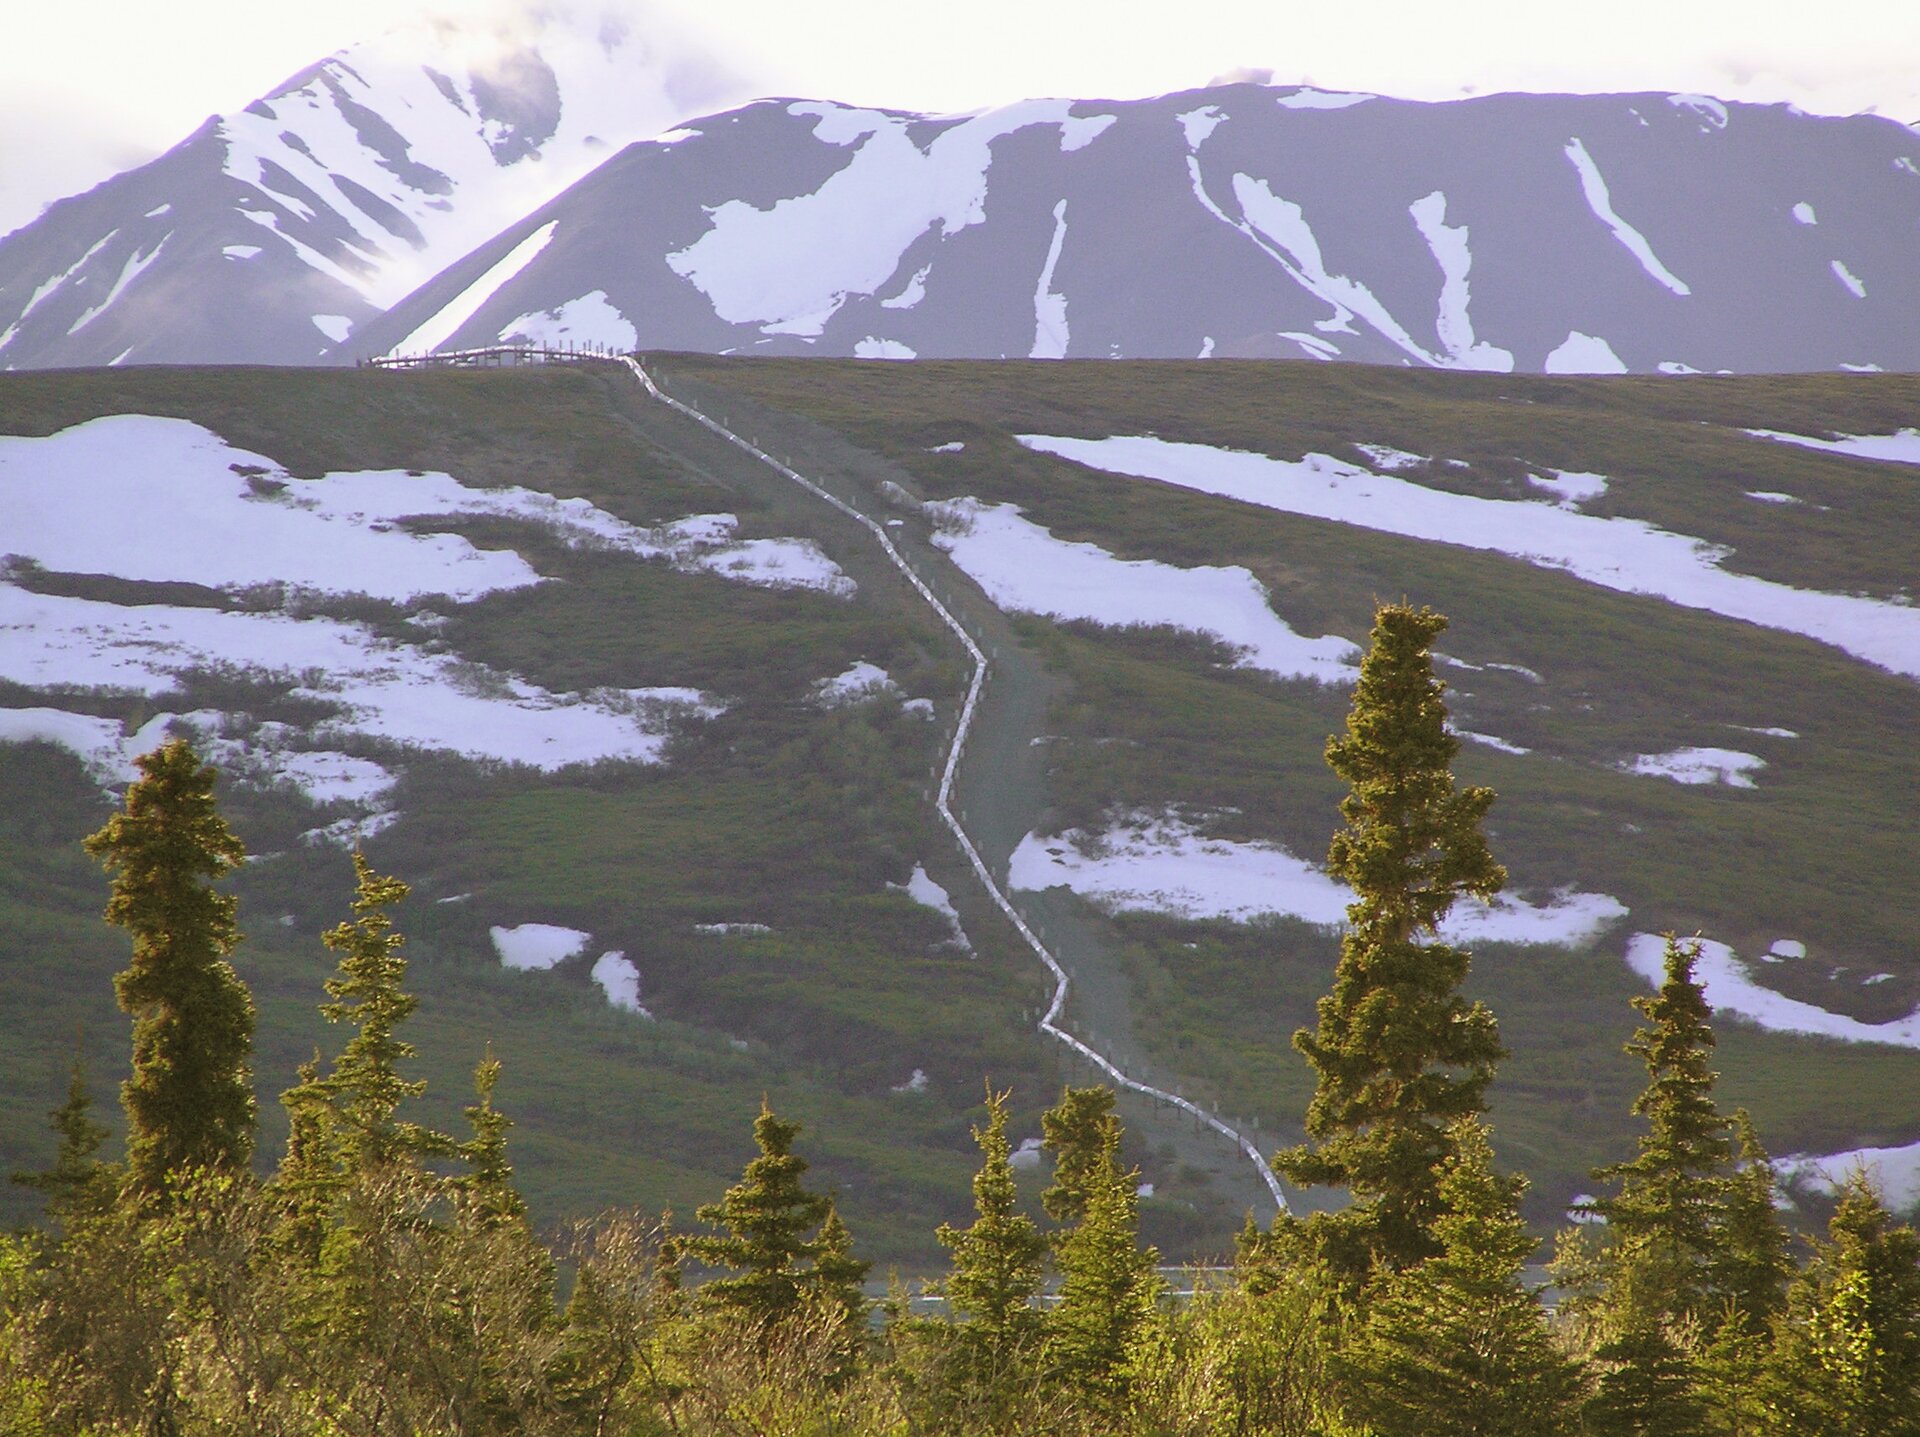 Zdjęcie przedstawia widok na rurociąg naziemny. Na pierwszym planie rosną drzewa iglaste. W tle na płaskim wzniesieniu znajduje się rurociąg wokół którego jest las i teren pokryty śniegiem. Za szczytem wzniesienia znajdują się góry.